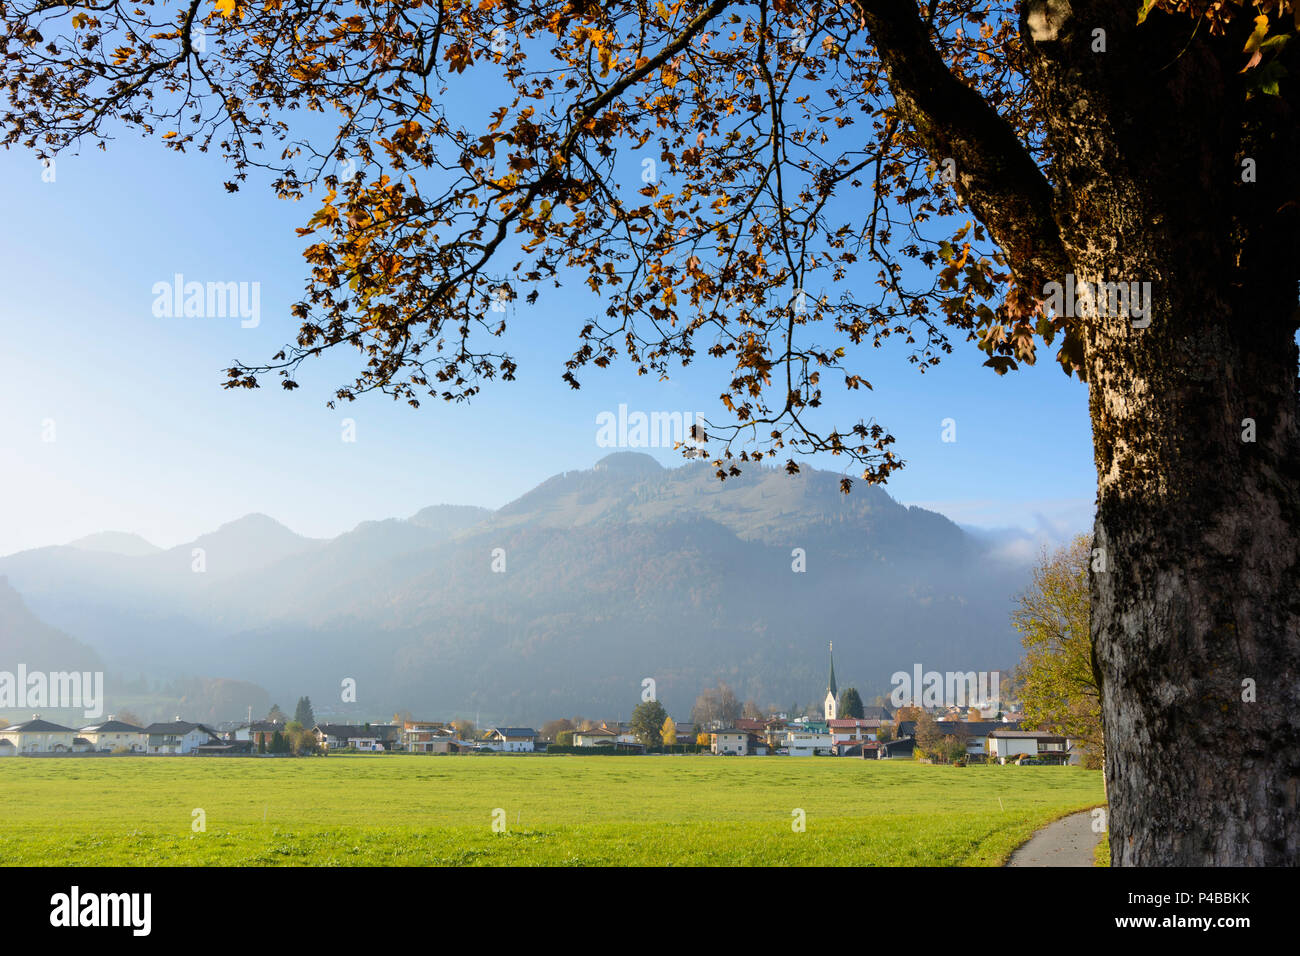 Kössen, village Kössen, mountain Chiemgauer Alpen Alps, Kaiserwinkl Region, Tyrol, Austria Stock Photo